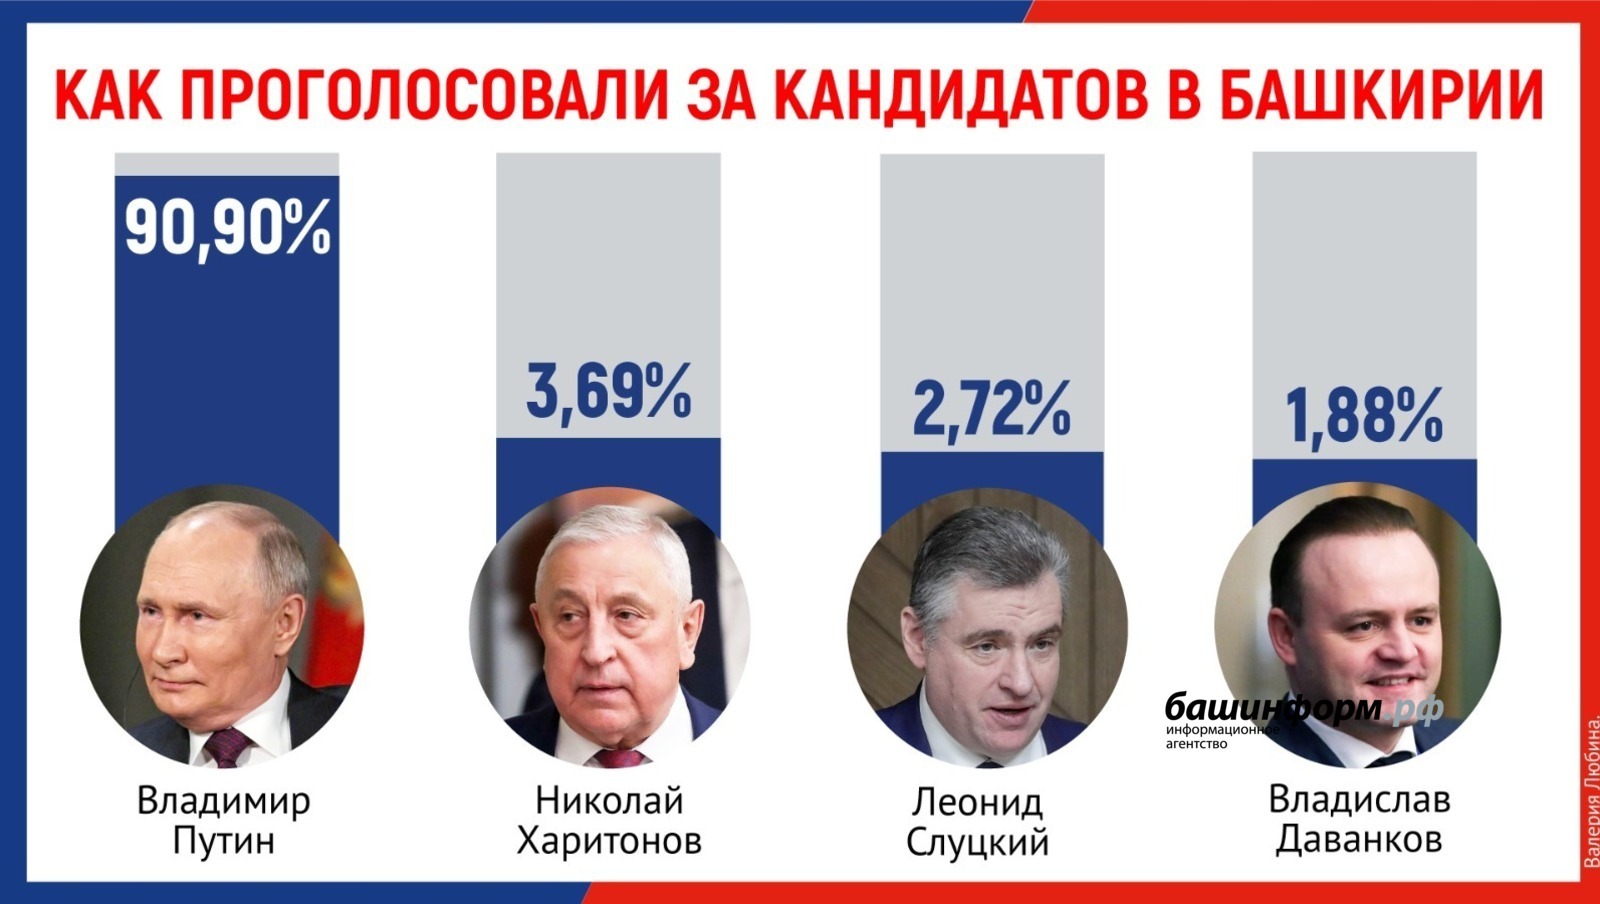 Центризбирком Башкирии завершил подсчет голосов на выборах президента России